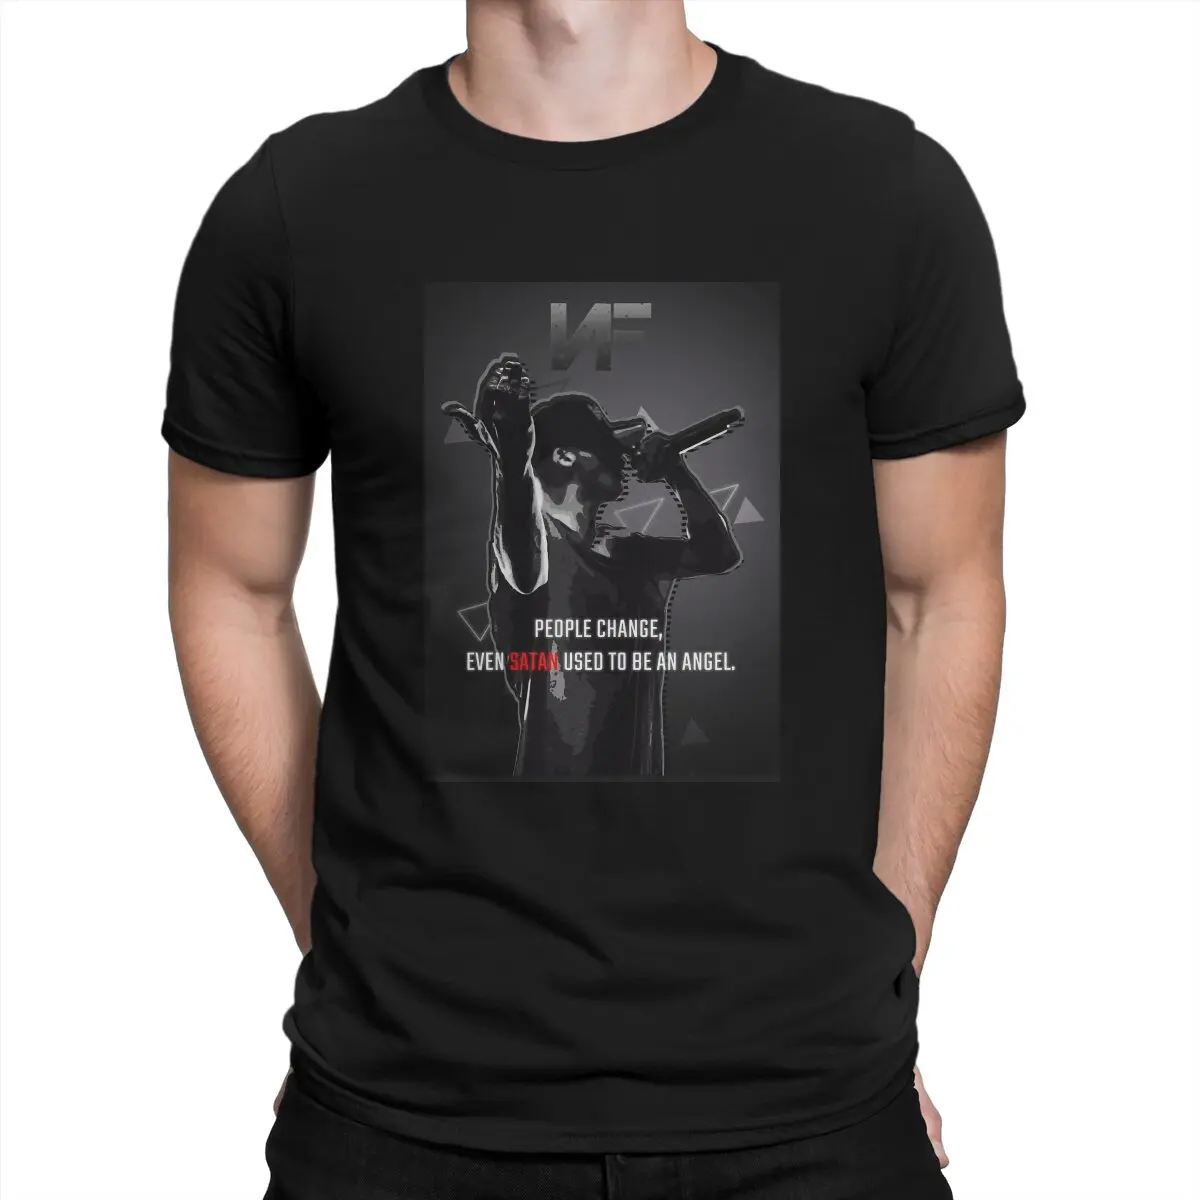 

Мужская футболка NF Nate Джон феерштейн, модная футболка для людей, модная футболка уличная одежда с графическим принтом хипстер